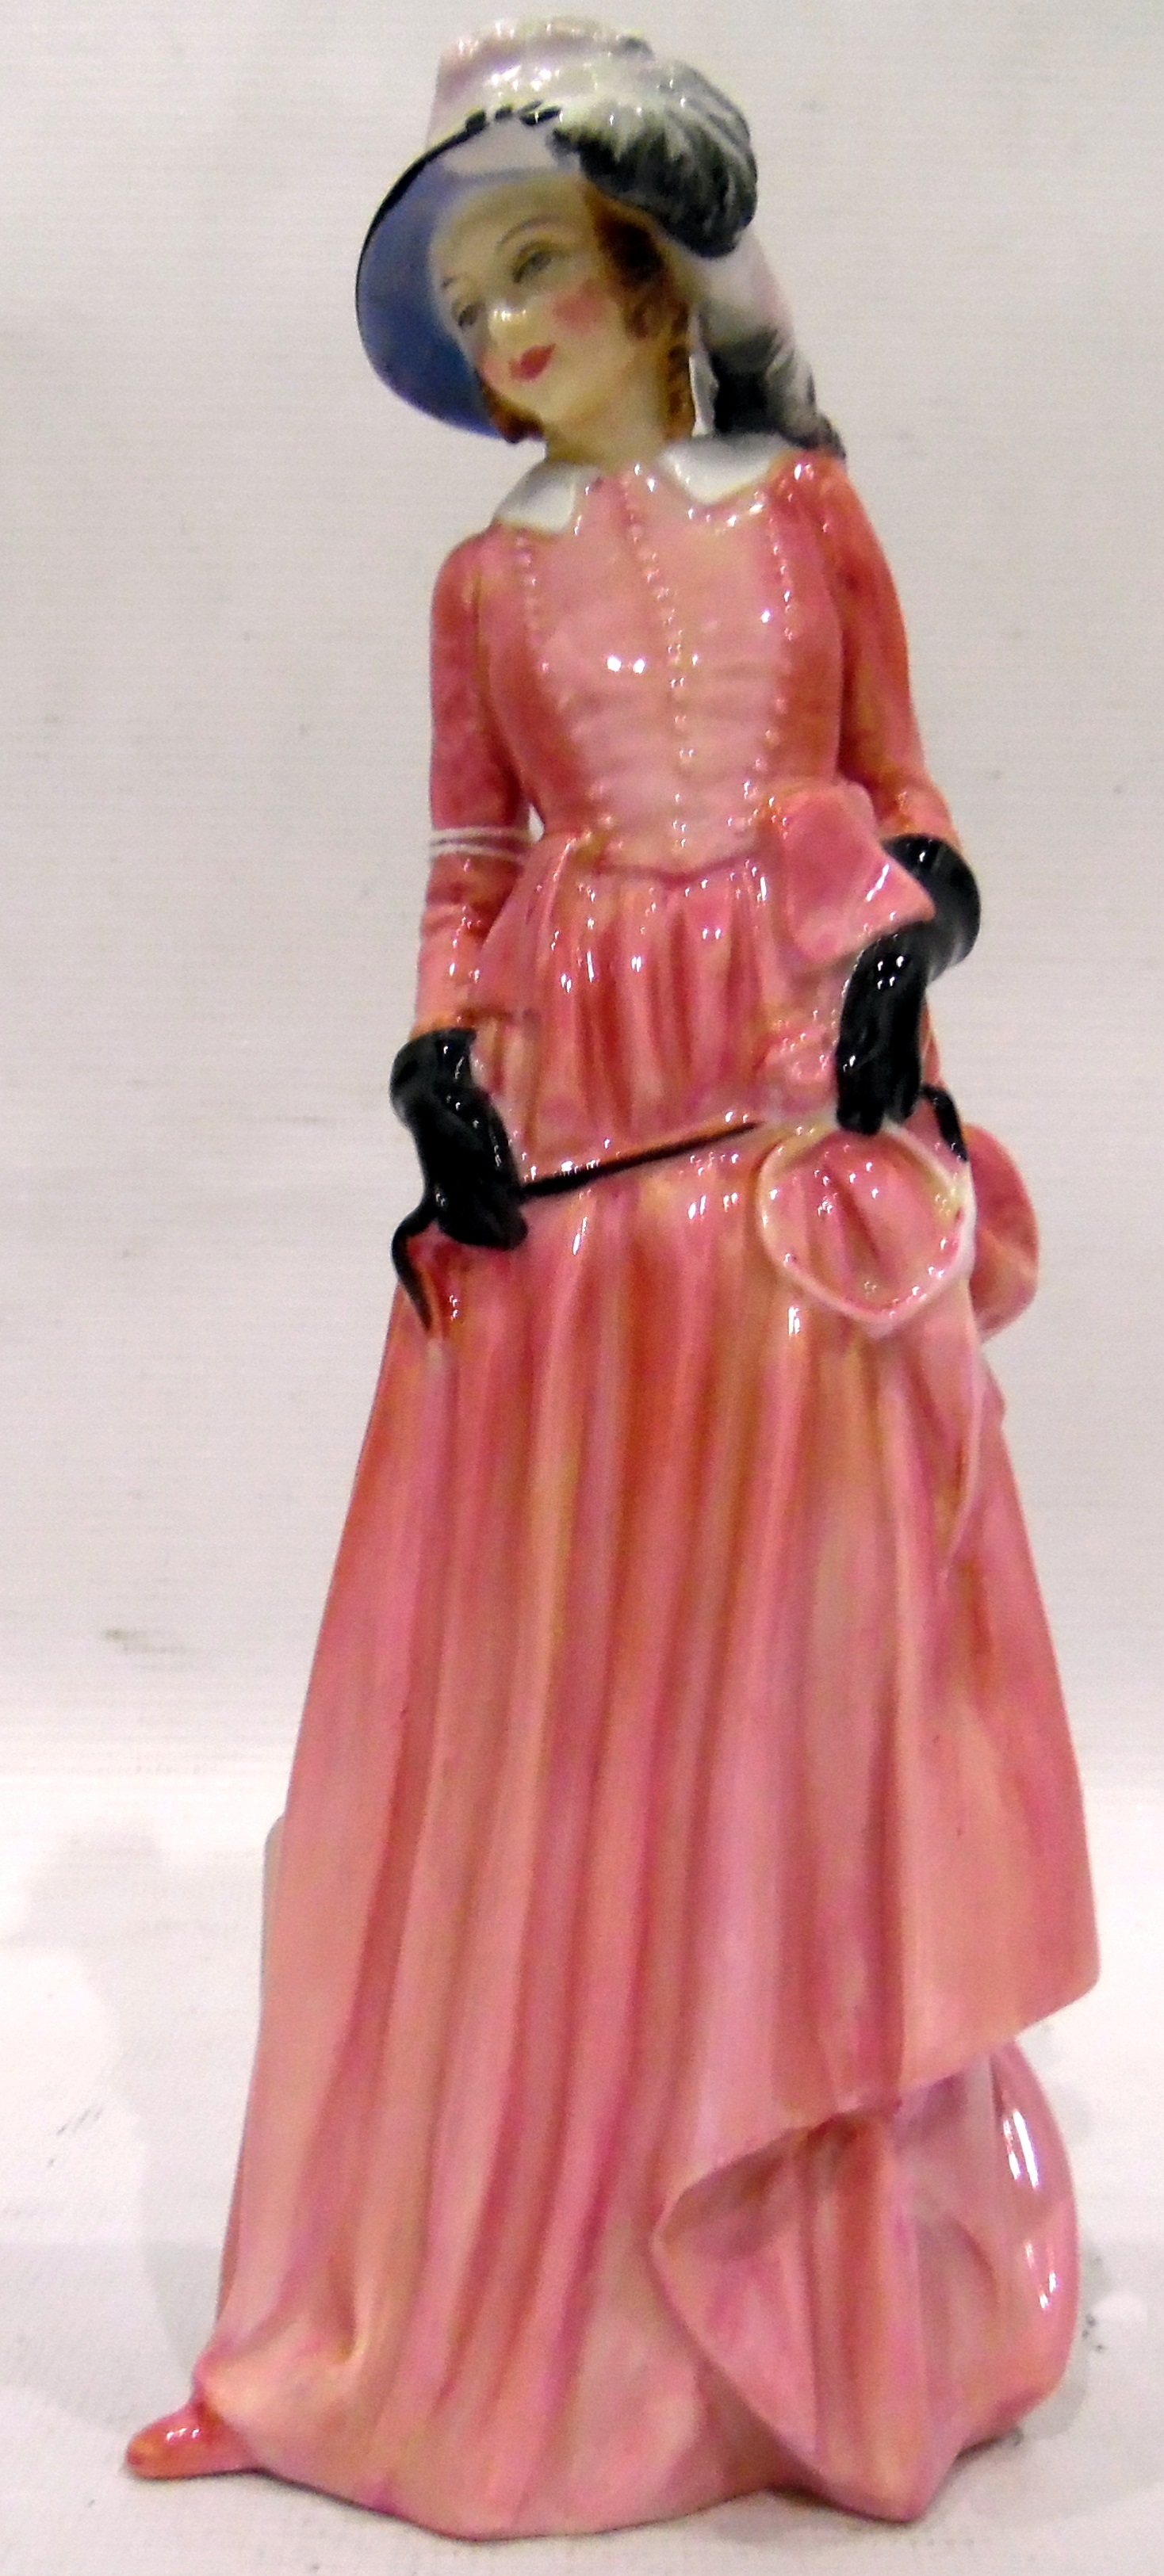 Royal Doulton figure 'Maureen' RD No. - Image 2 of 2